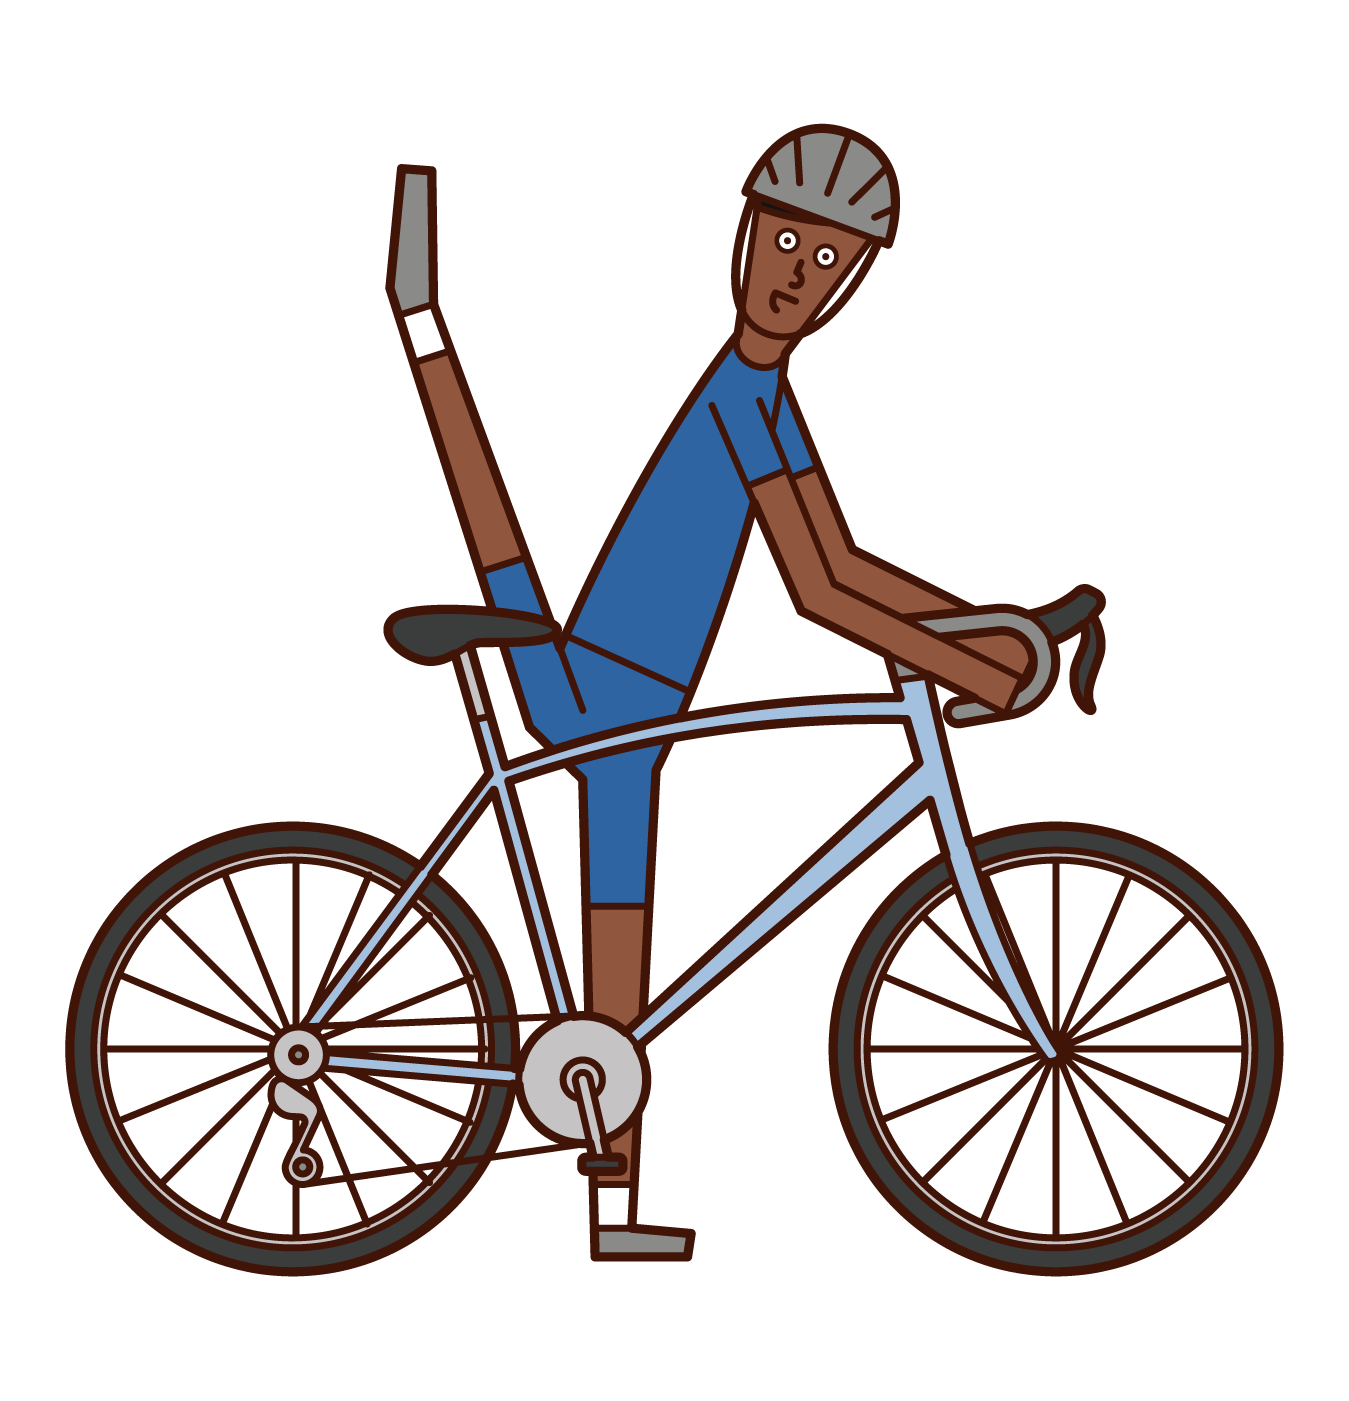 다리를 높게 자전거를 타는 남자의 그림